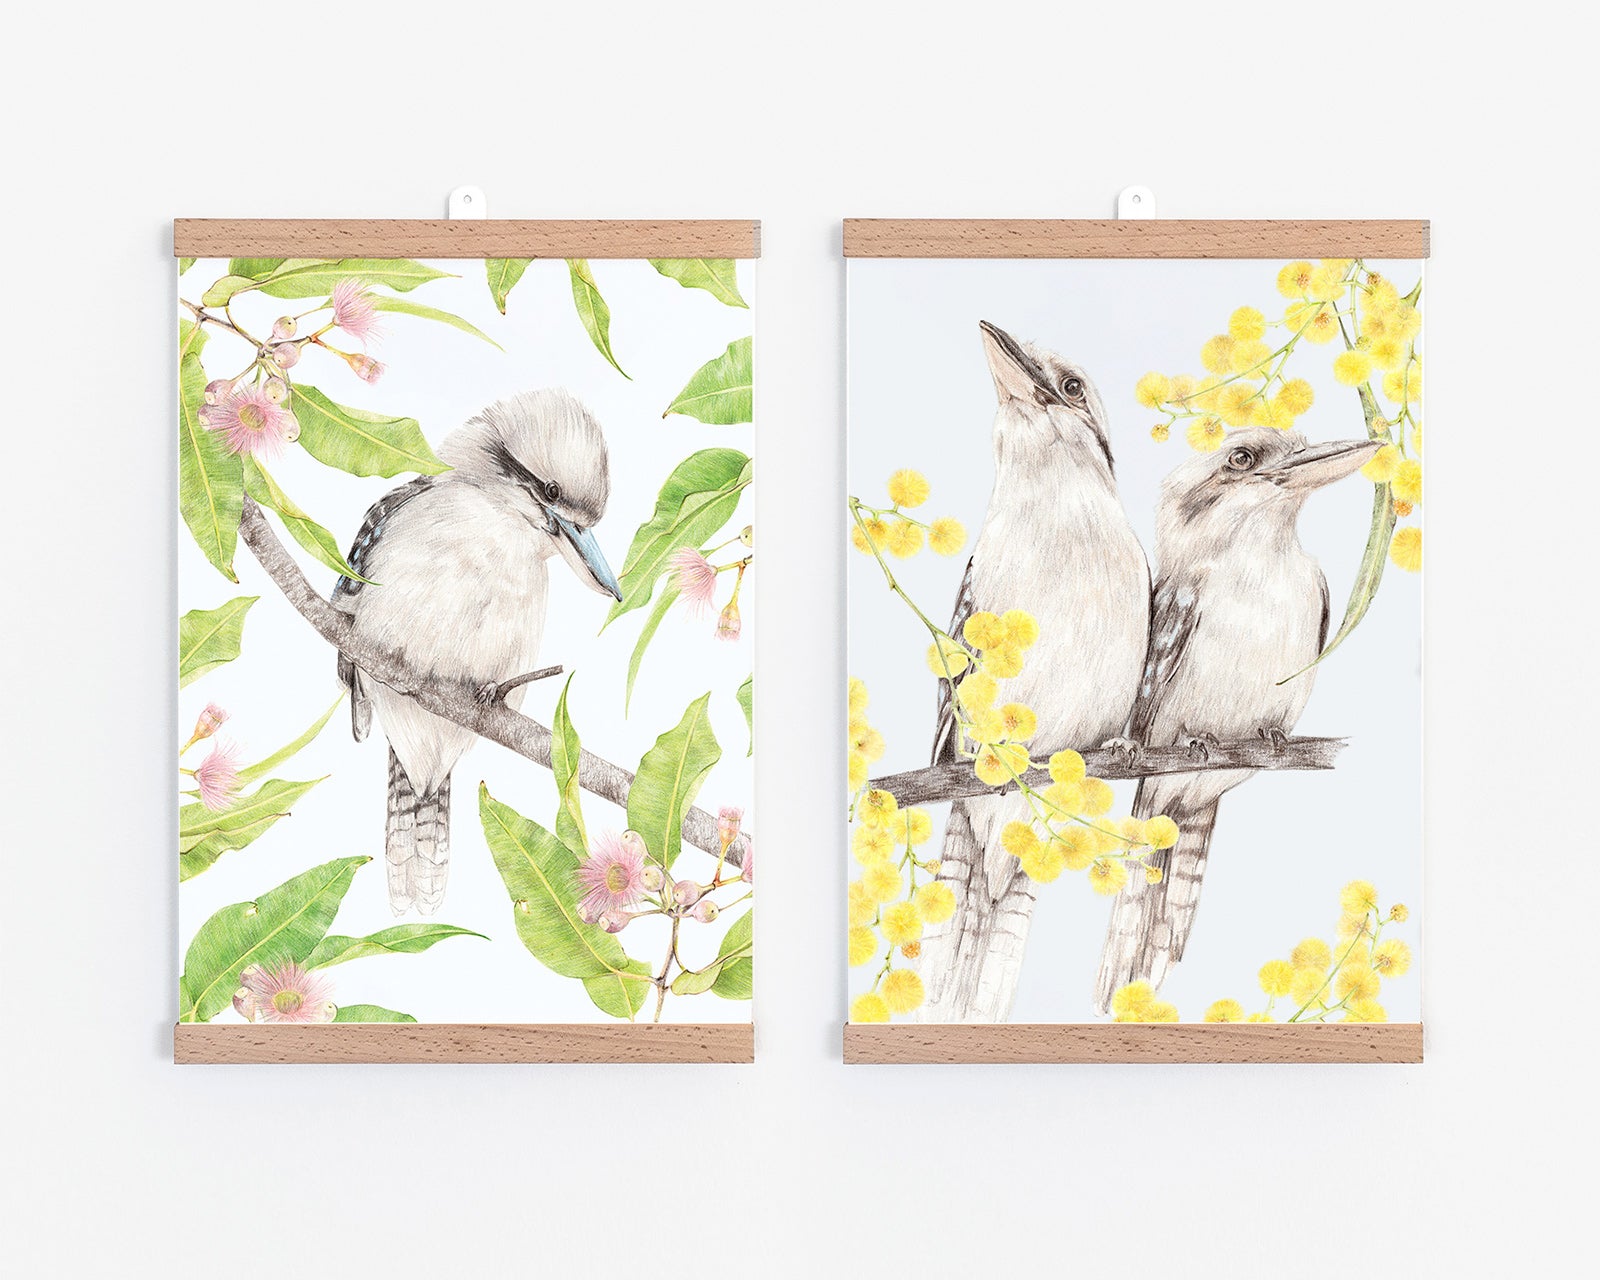 Australian themed art prints featuring kookaburras